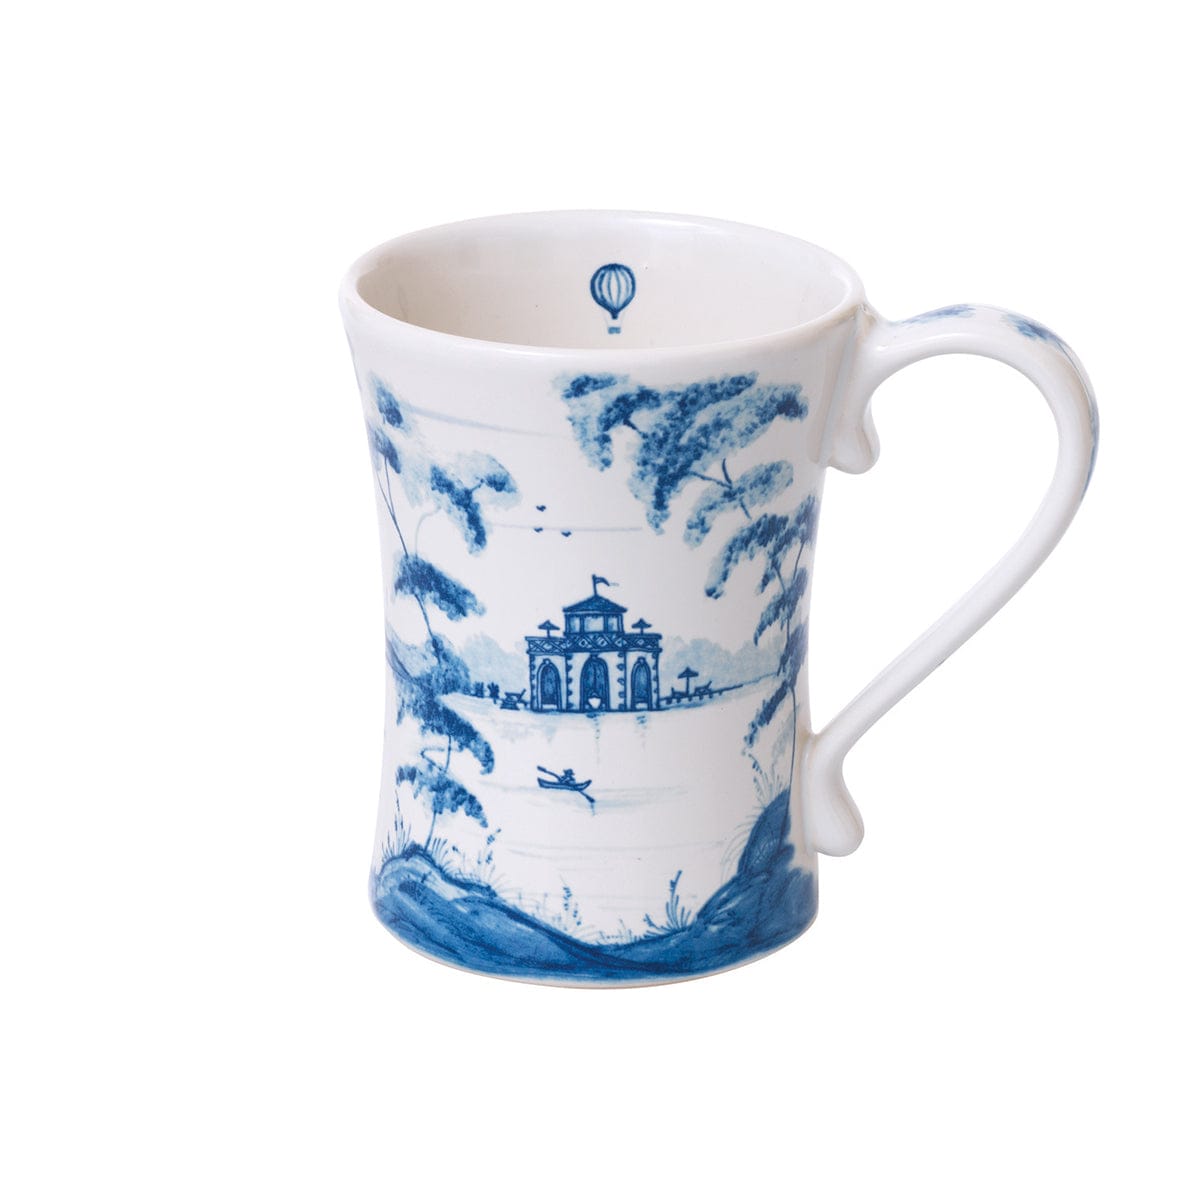 Country Estate Mug - Delft Blue S/4